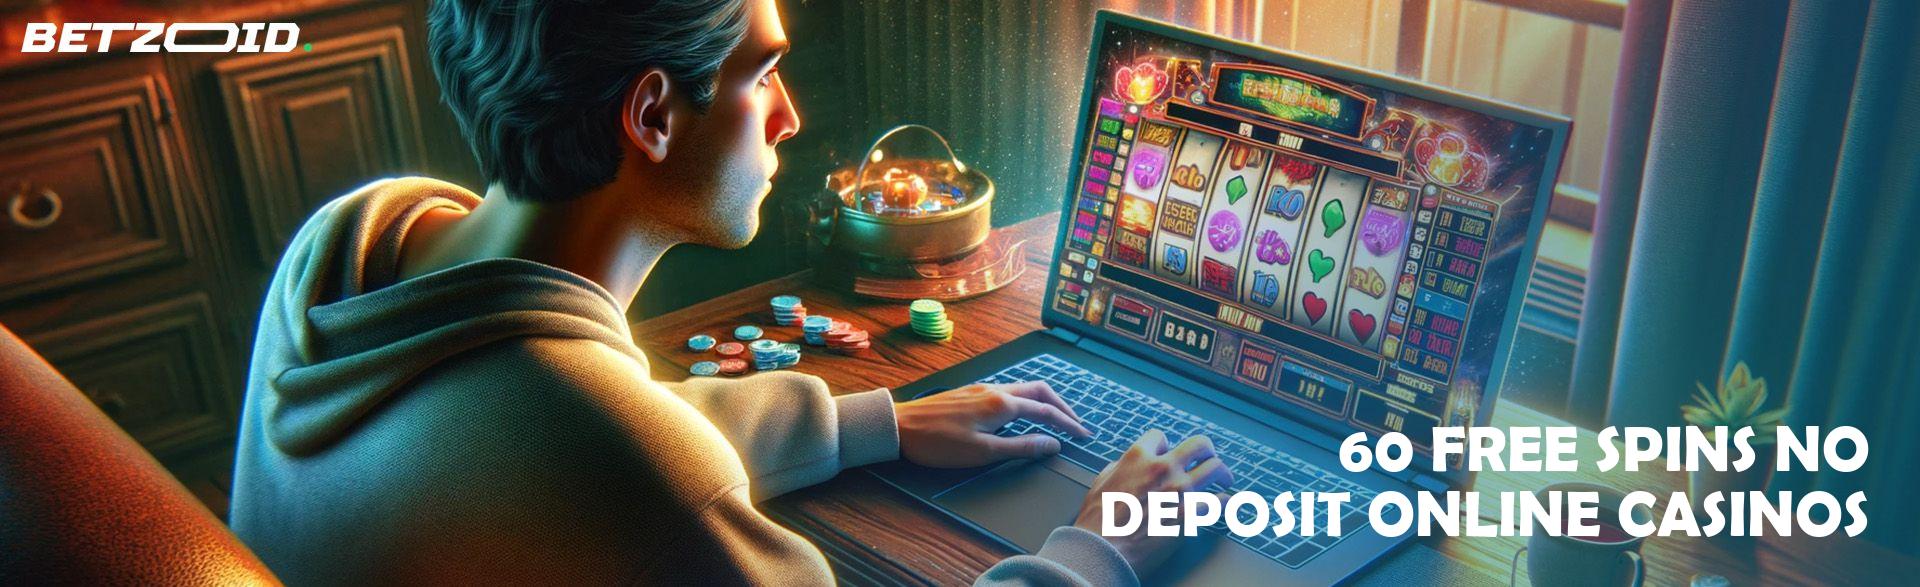 60 Free Spins No Deposit Online Casinos.